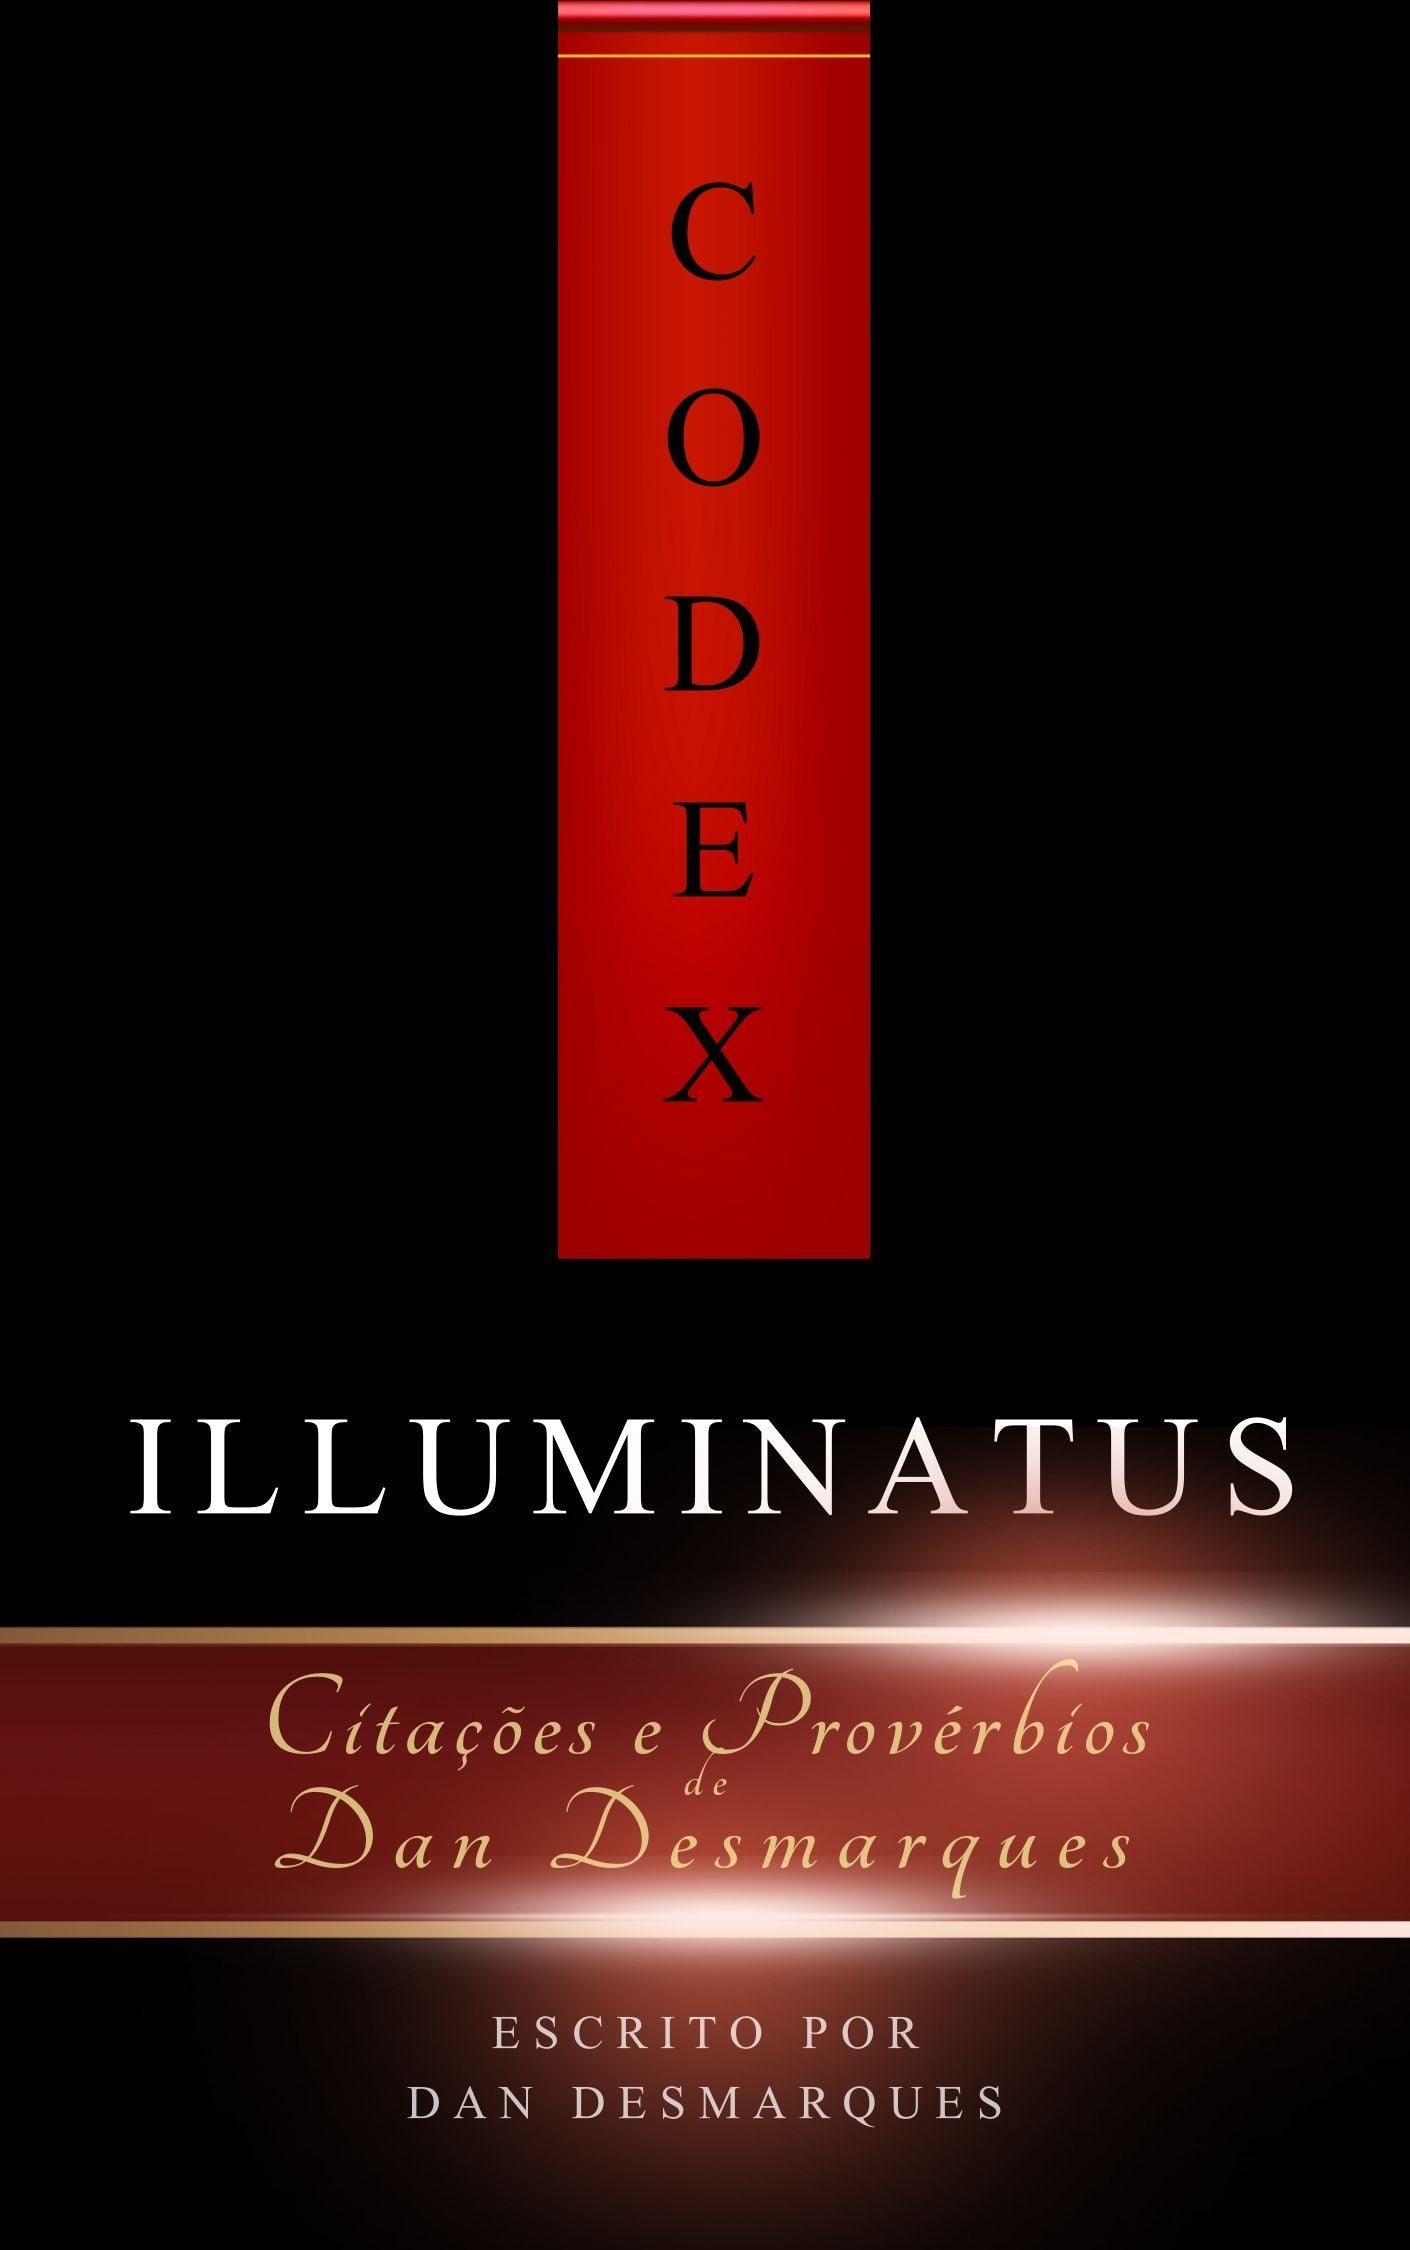 Codex Illuminatus - 22 Lions